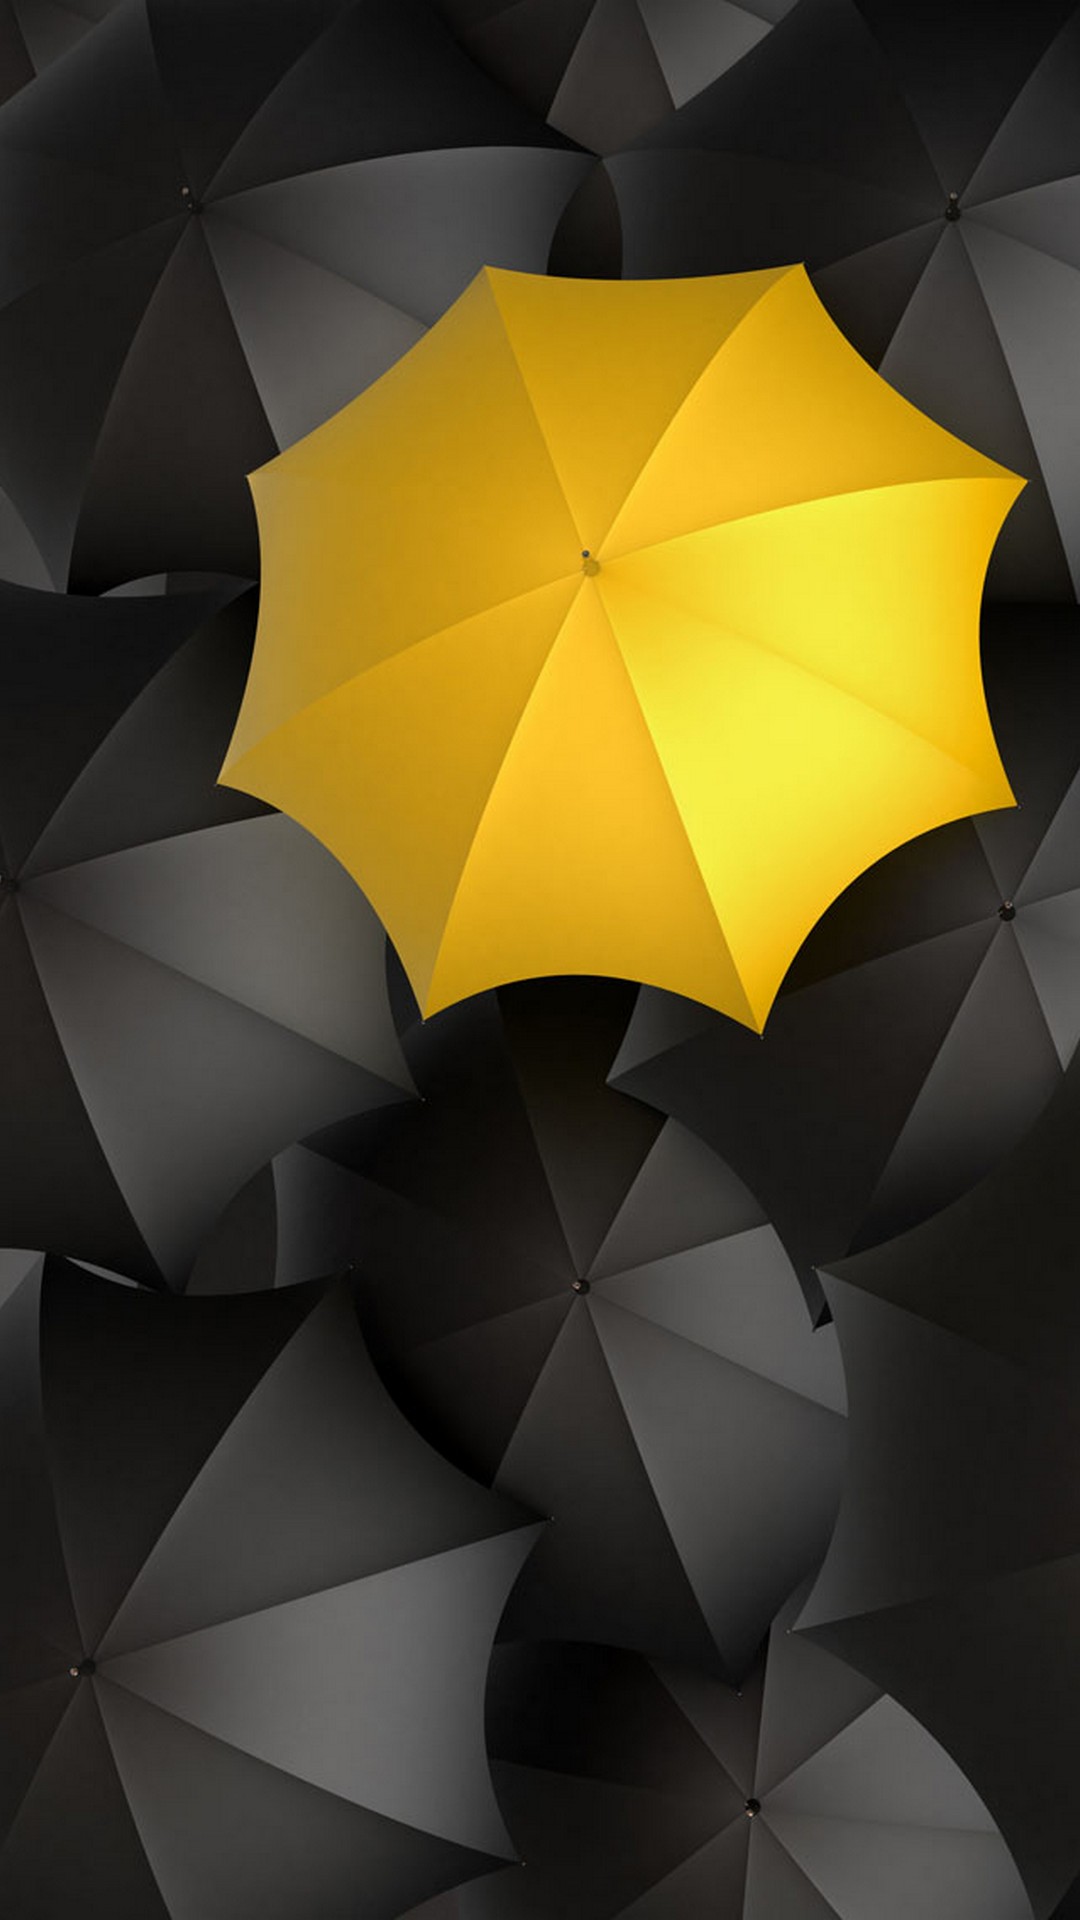 Umbrella Wallpaper iPhone resolution 1080x1920